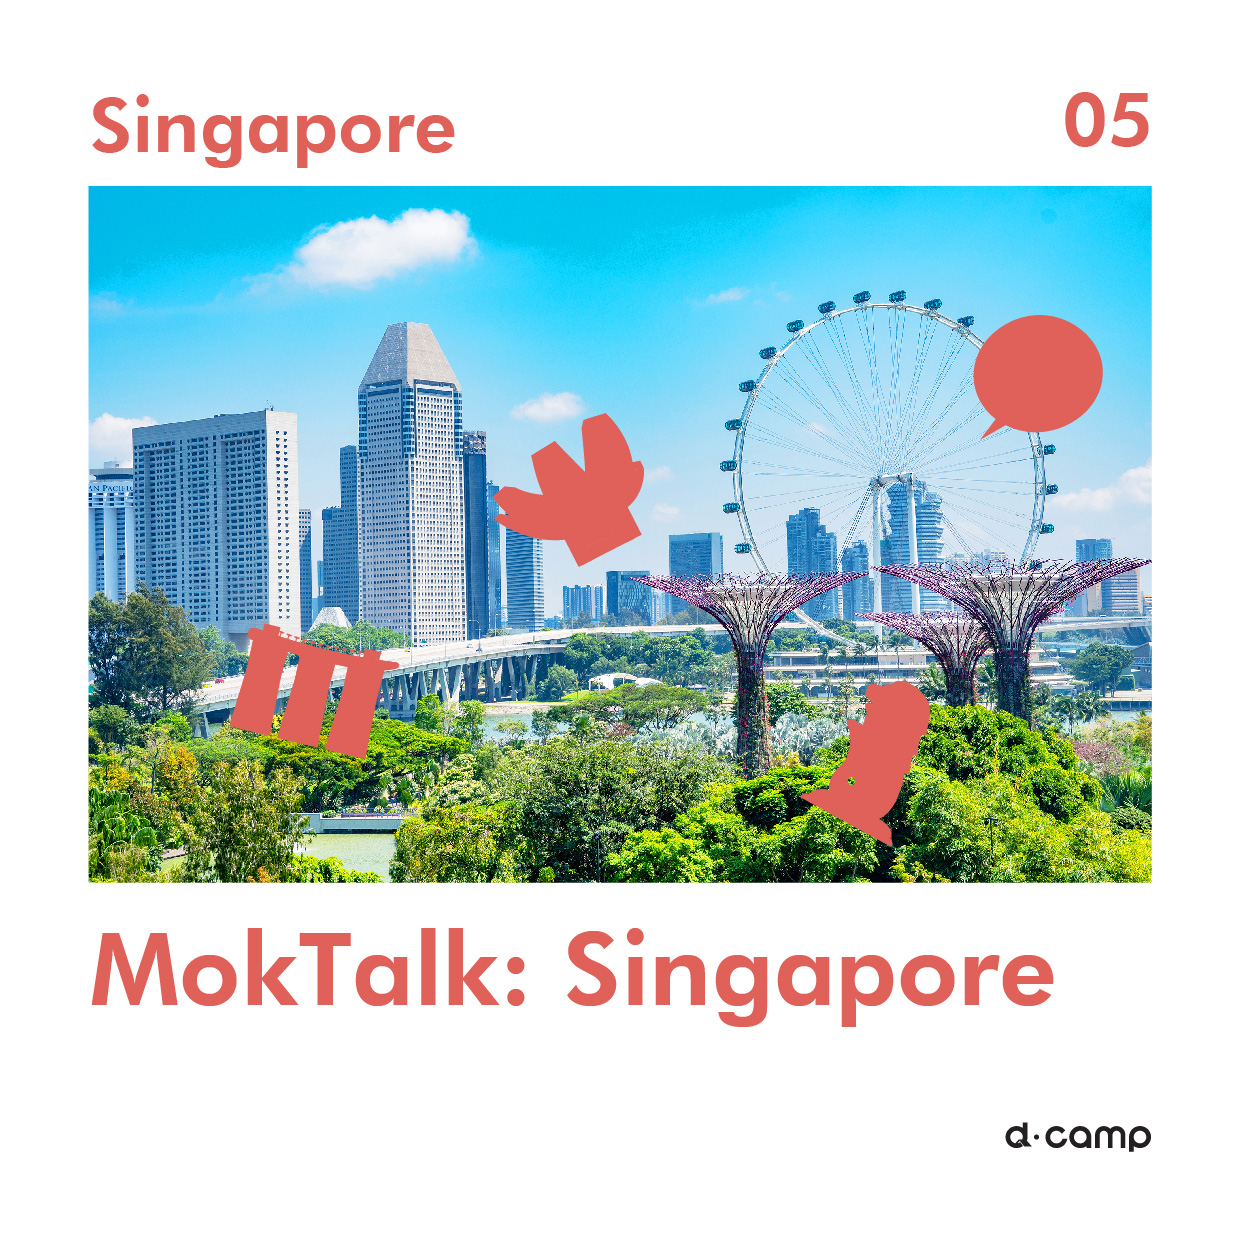  디캠프 X Invest KOREA 모크토크 :싱가포르 의 웹포스터